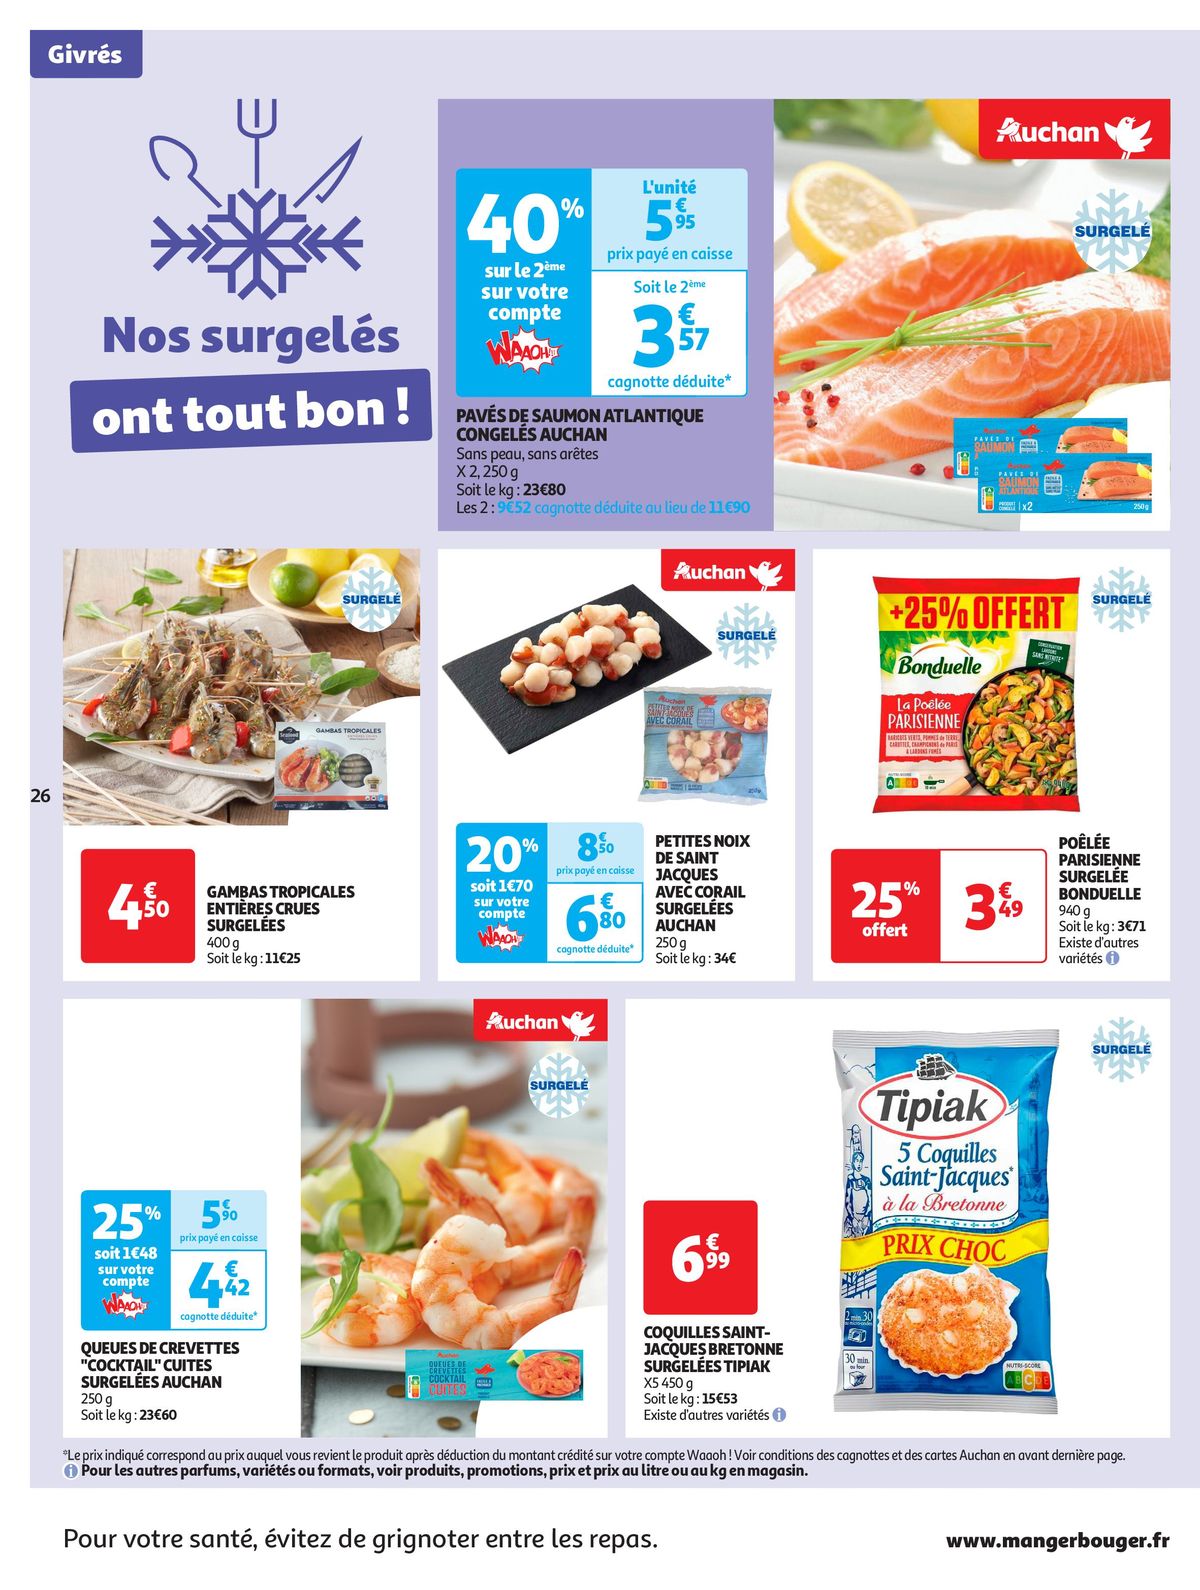 Catalogue Format XXL à prix XXS dans votre supermarché, page 00026